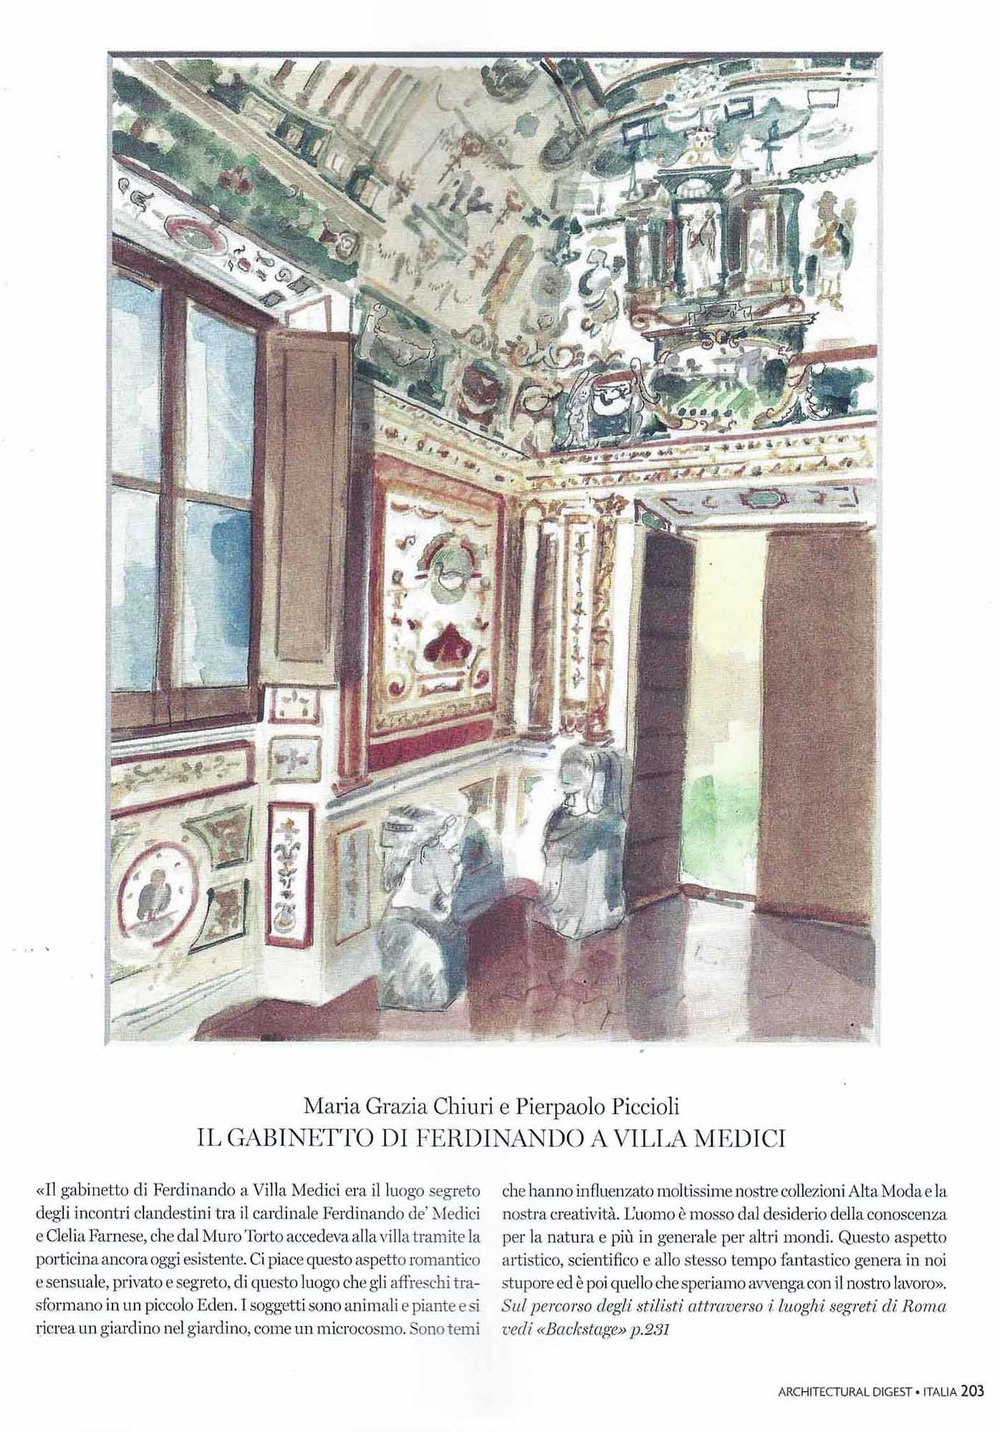 Maria Grazie Chiuri & Pierpaolo Piccioli - Villa Medici